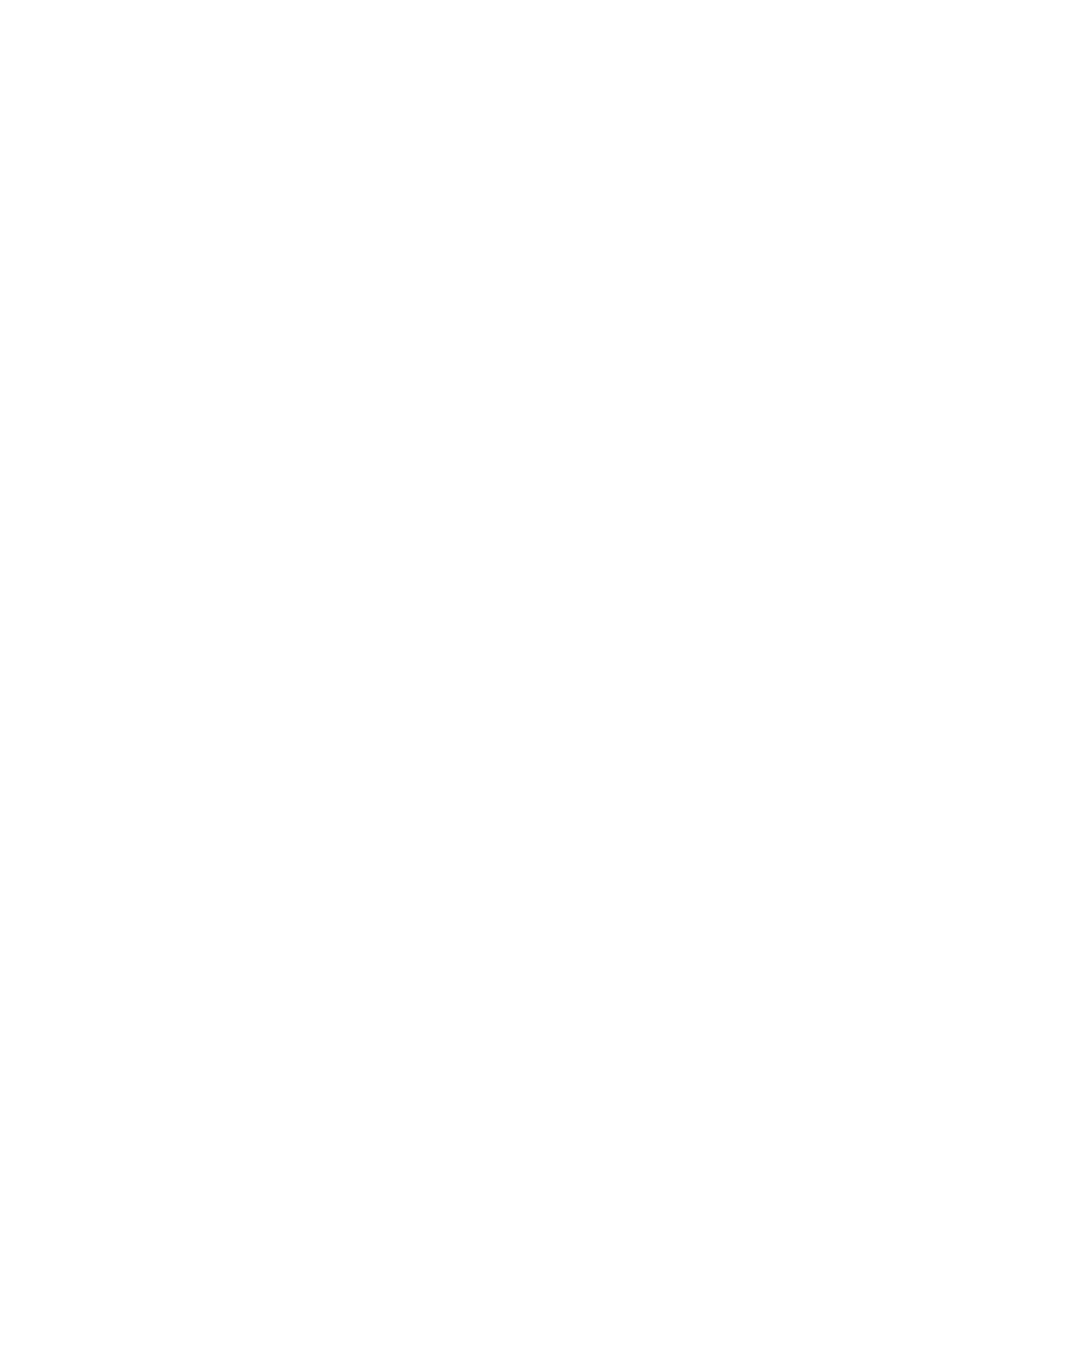 RyS Advisors